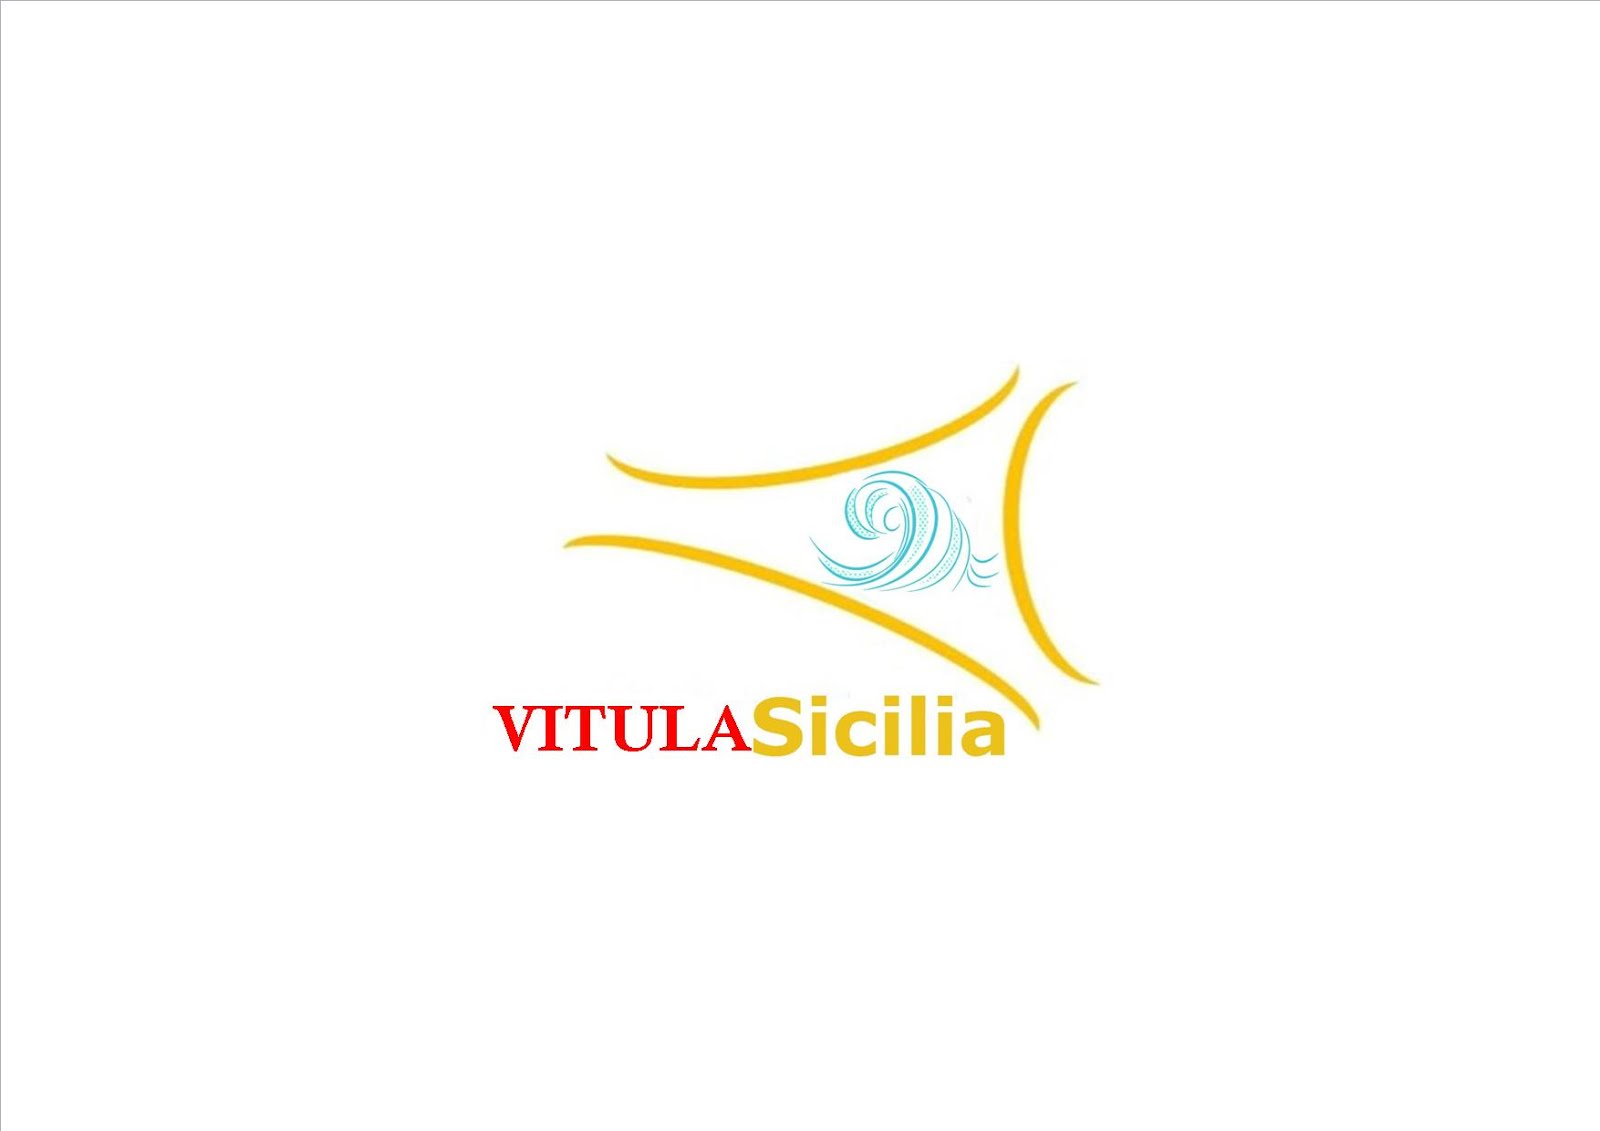 VITULA SICILIA